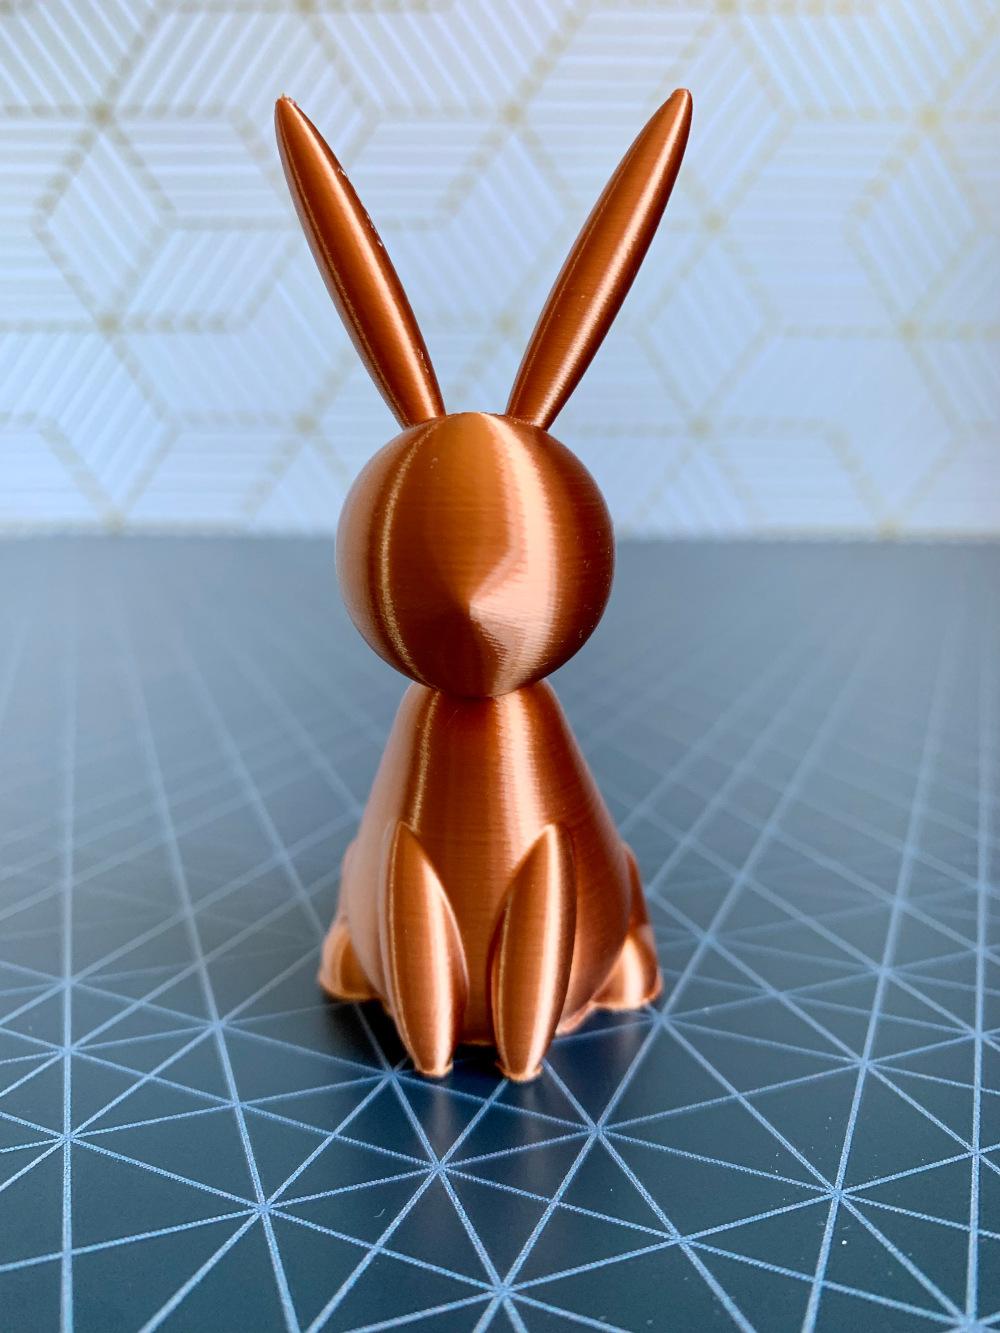 minimalistic_rabbit.stl 3d model